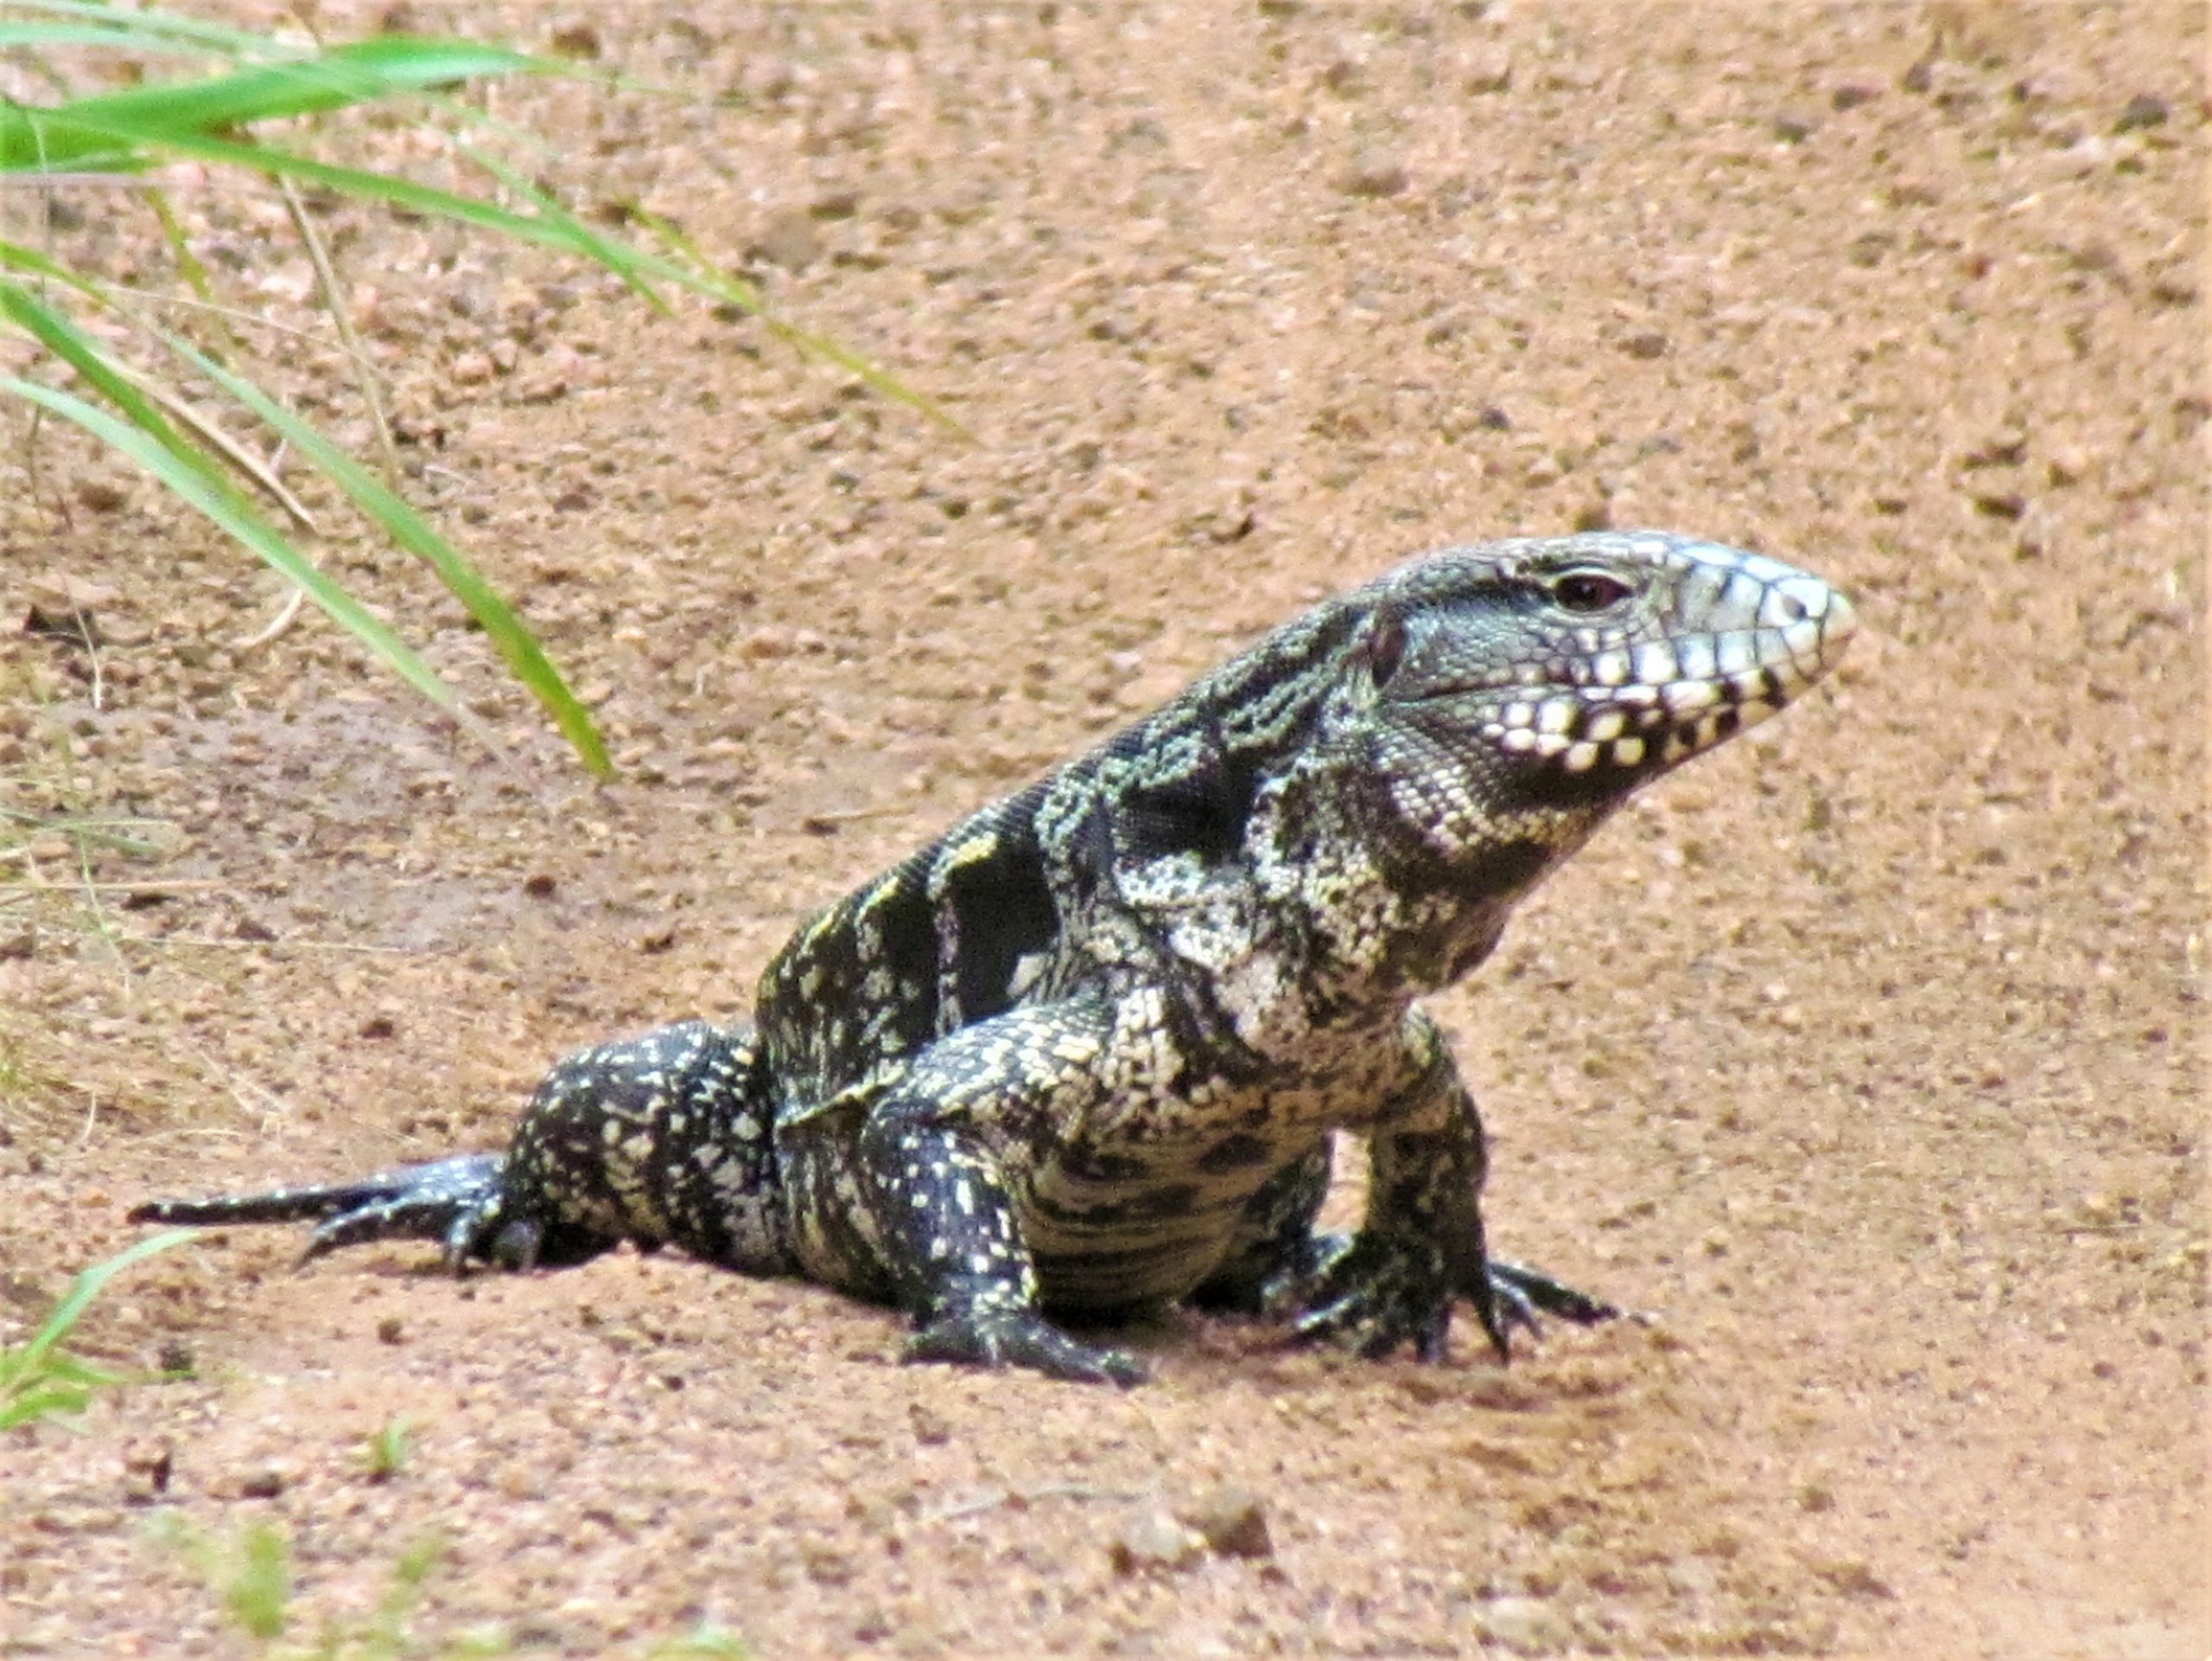 Teju guasu - Lagarto overo (Salvator merianae). Es uno de los lagartos más grandes del país. Foto: Rebeca Irala (Concepción, diciembre 2020)